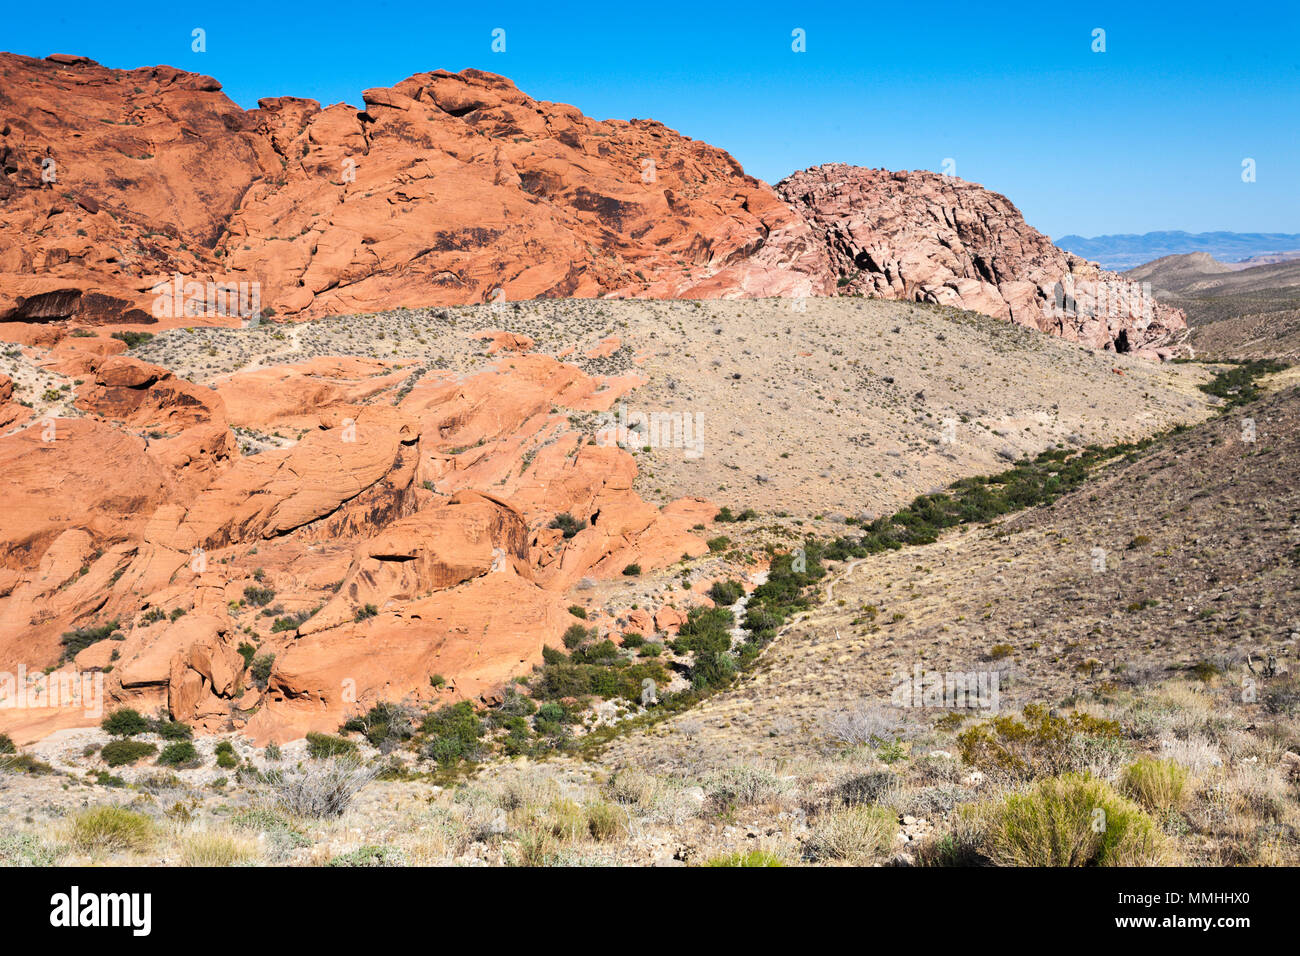 La végétation du désert bas de lignes vallée entre rock formations in Red Rock Canyon National Conservation Area en dehors de Las Vegas, Nevada Banque D'Images